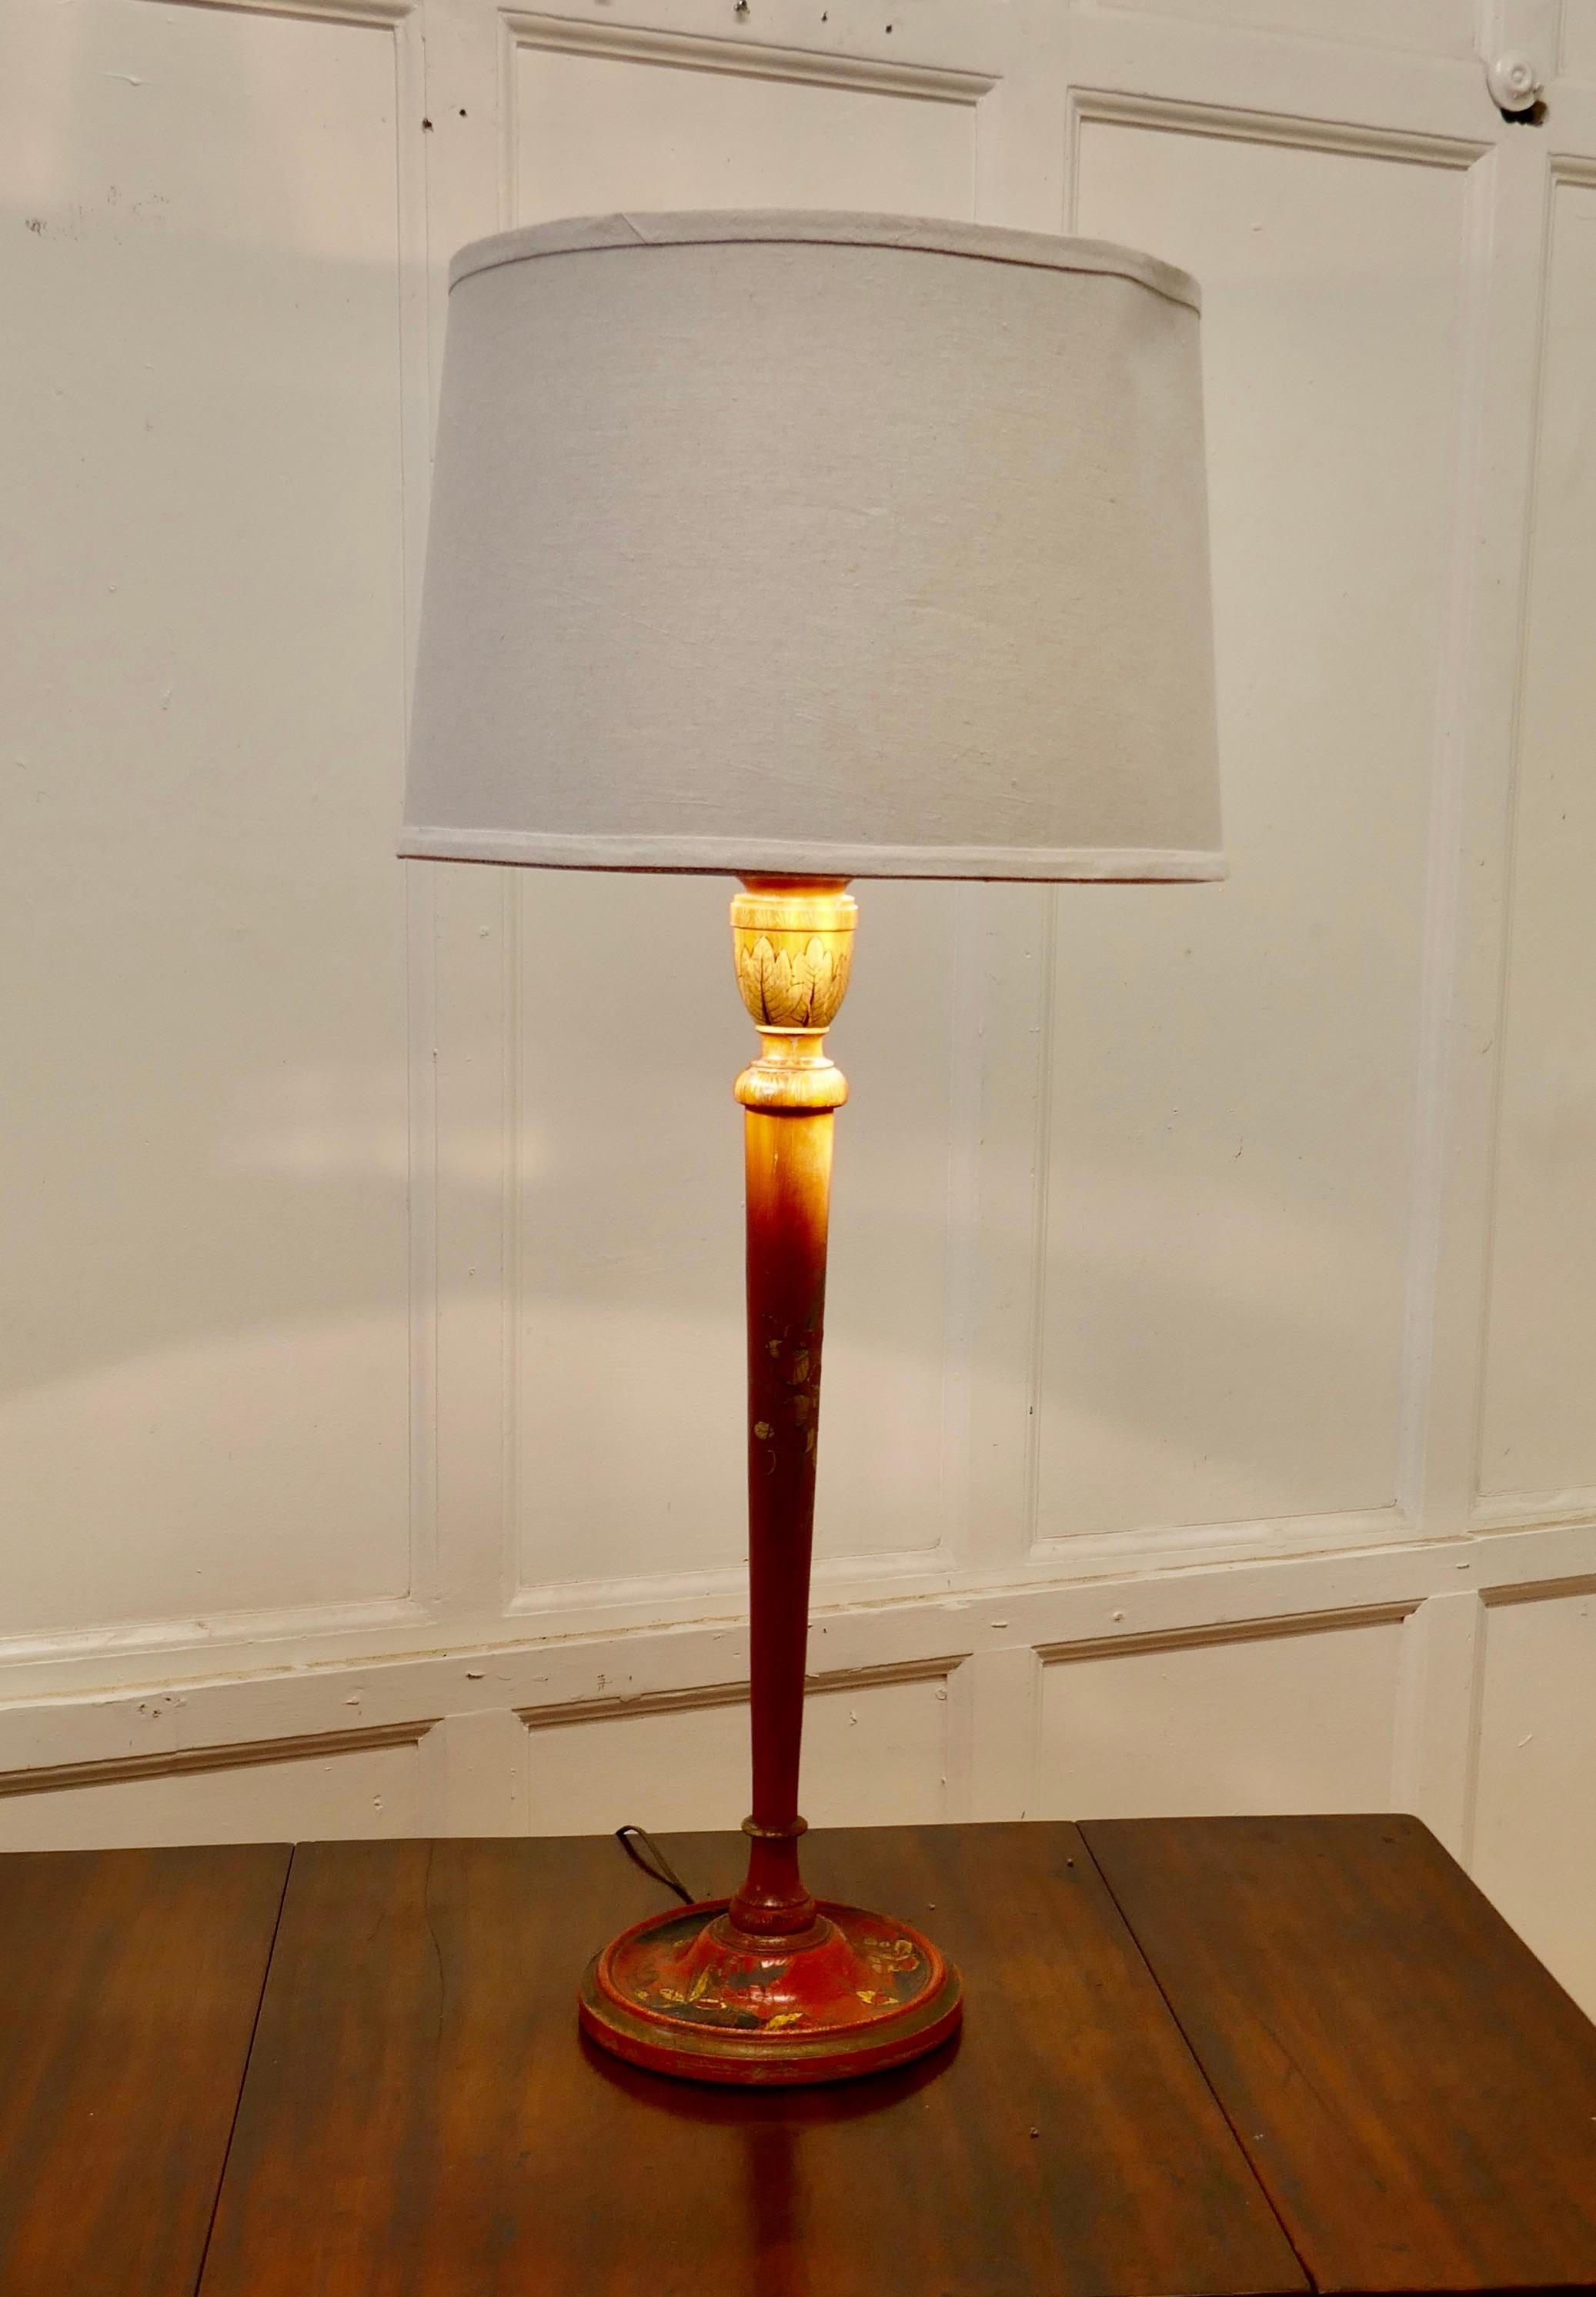 Lampe de table en laque de la Chinoiserie

Cette lampe Chinoiserie a une couleur de fond très inhabituelle que l'on ne peut décrire que comme 